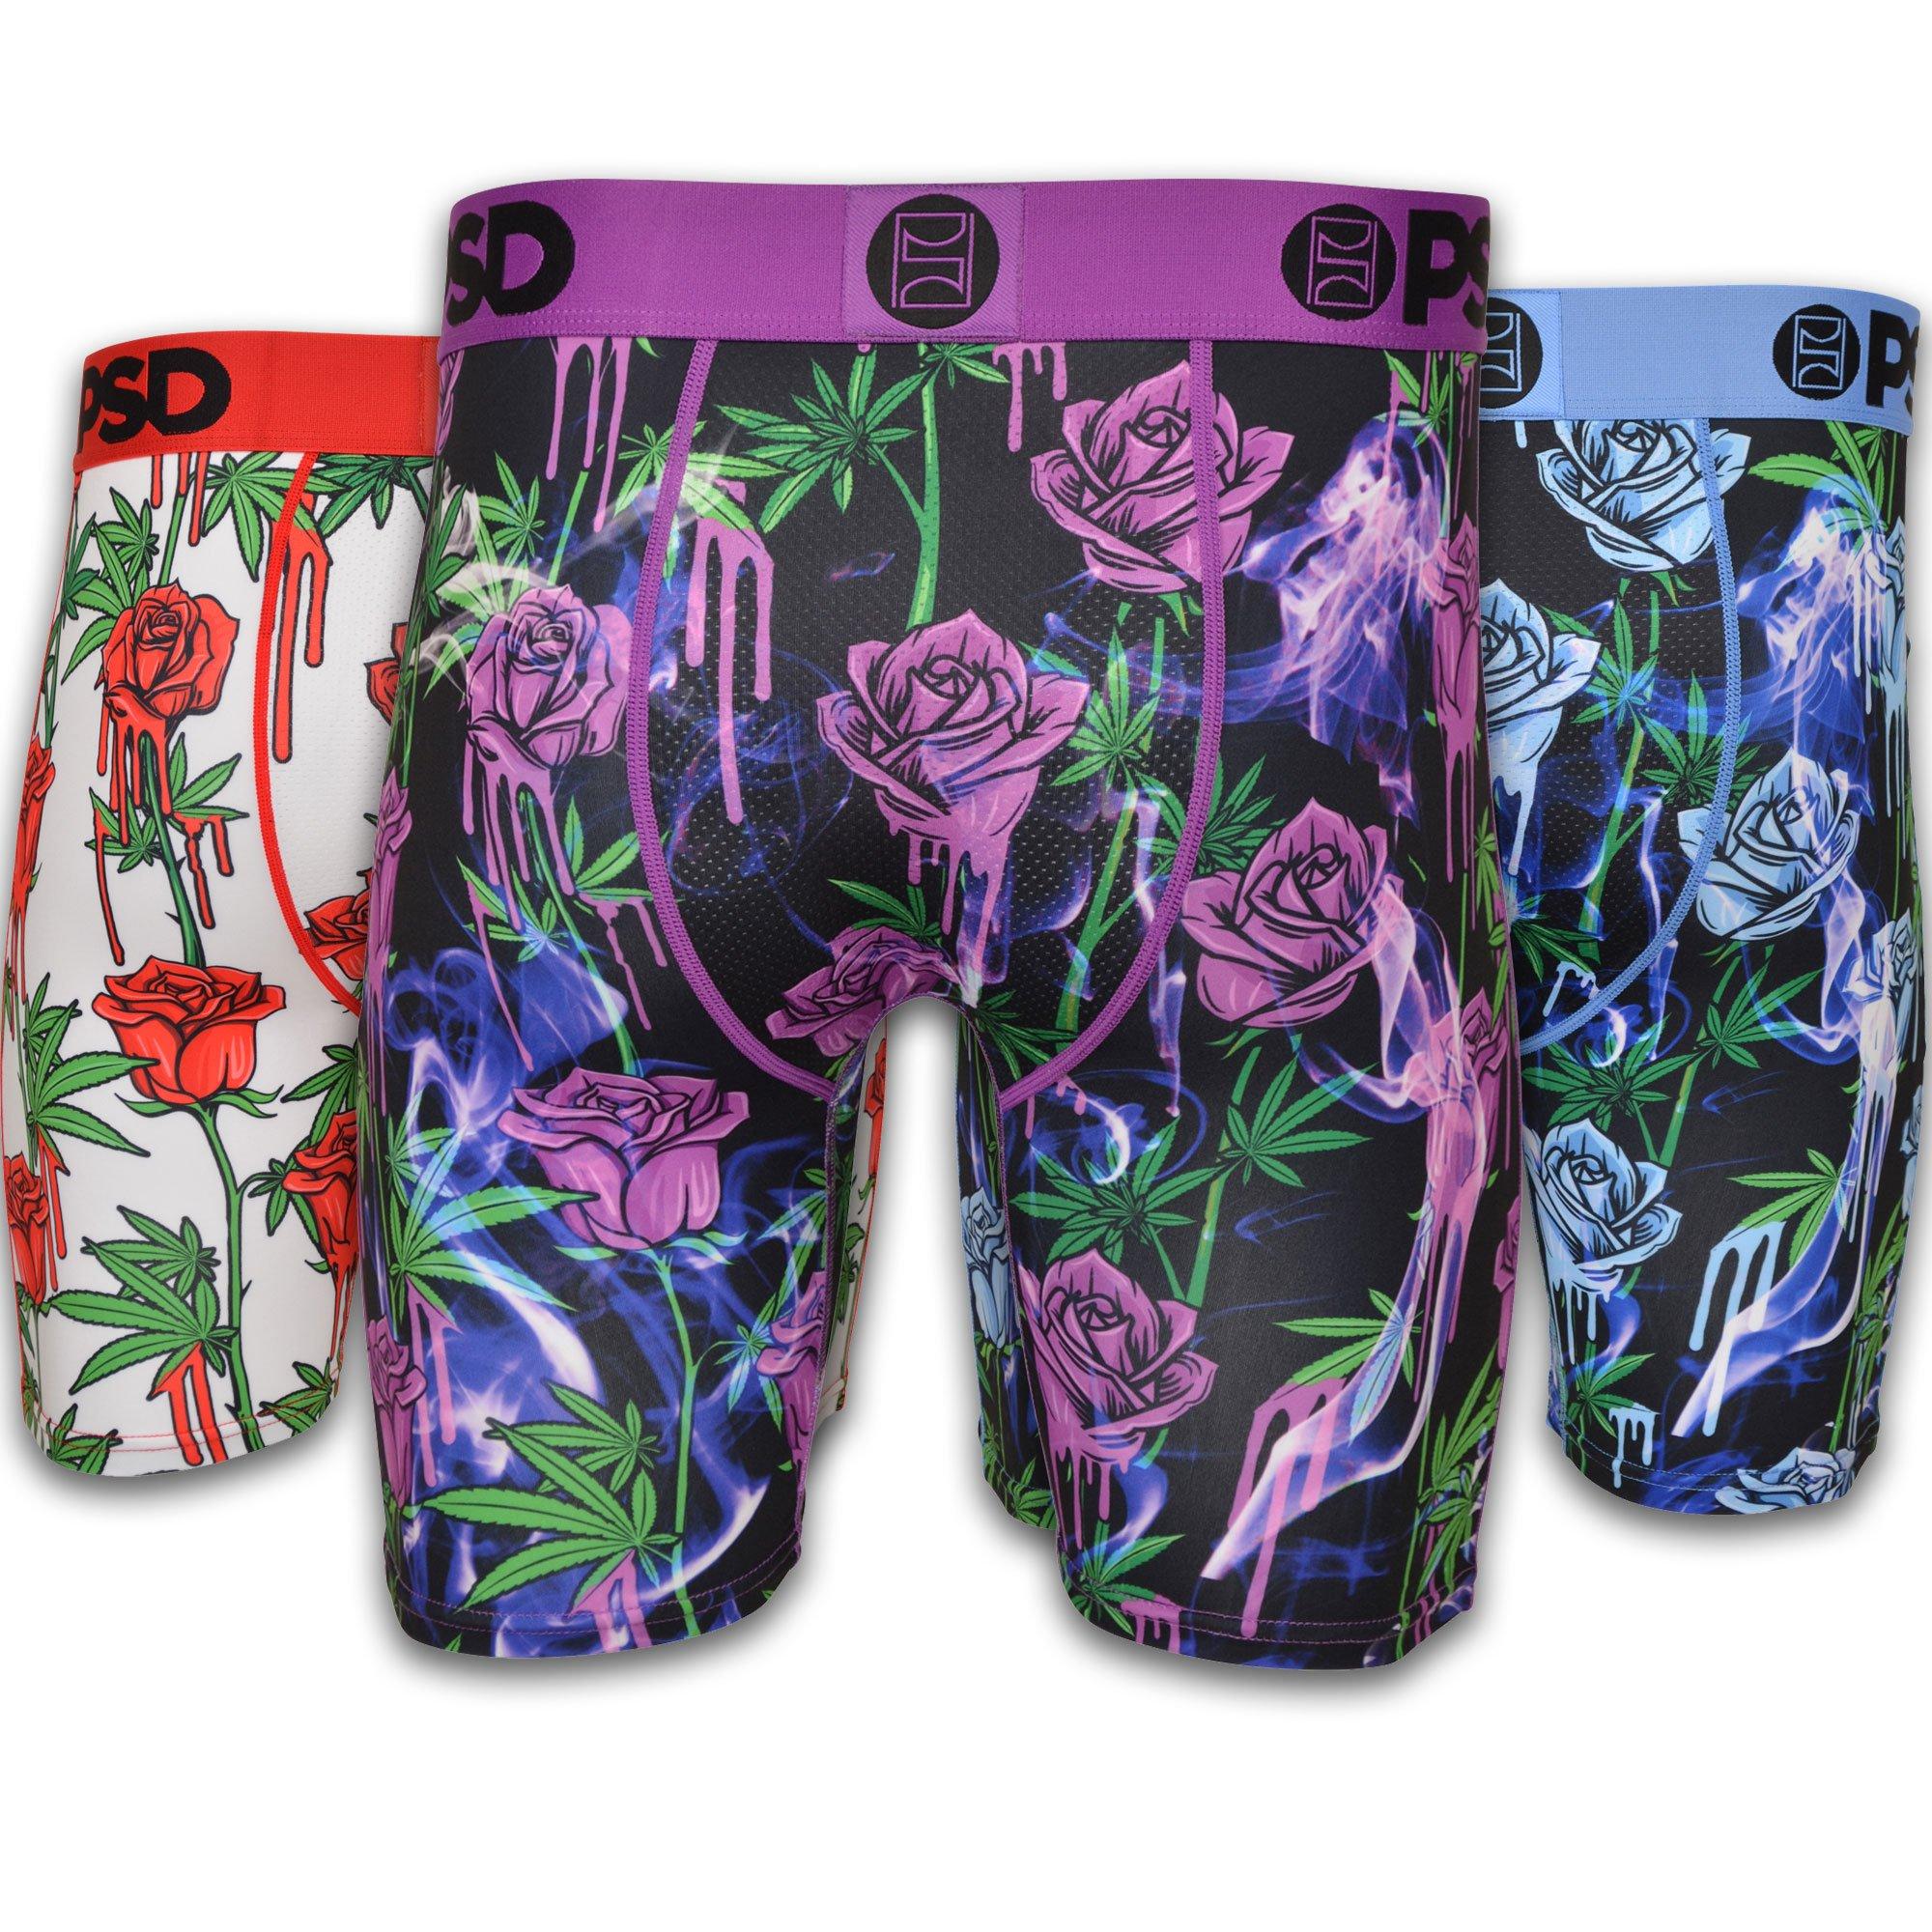 PSD Men's Money Roses Underwear - Hibbett